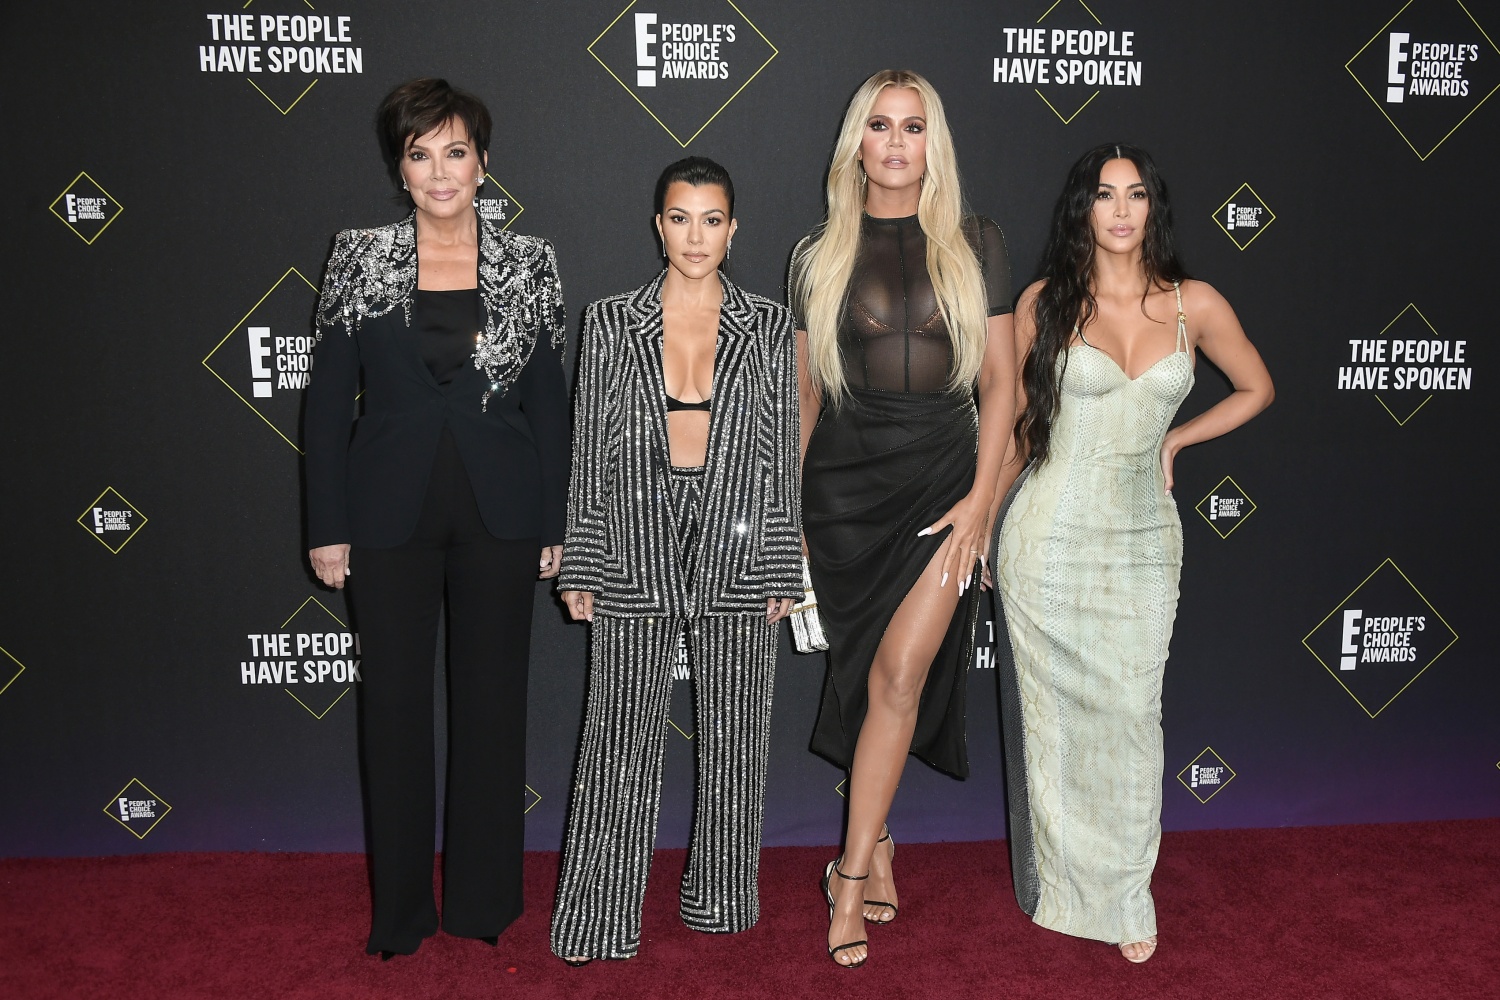 (L-R) Kris Jenner, Kourtney Kardashian, Khloé Kardashian and Kim Kardashian